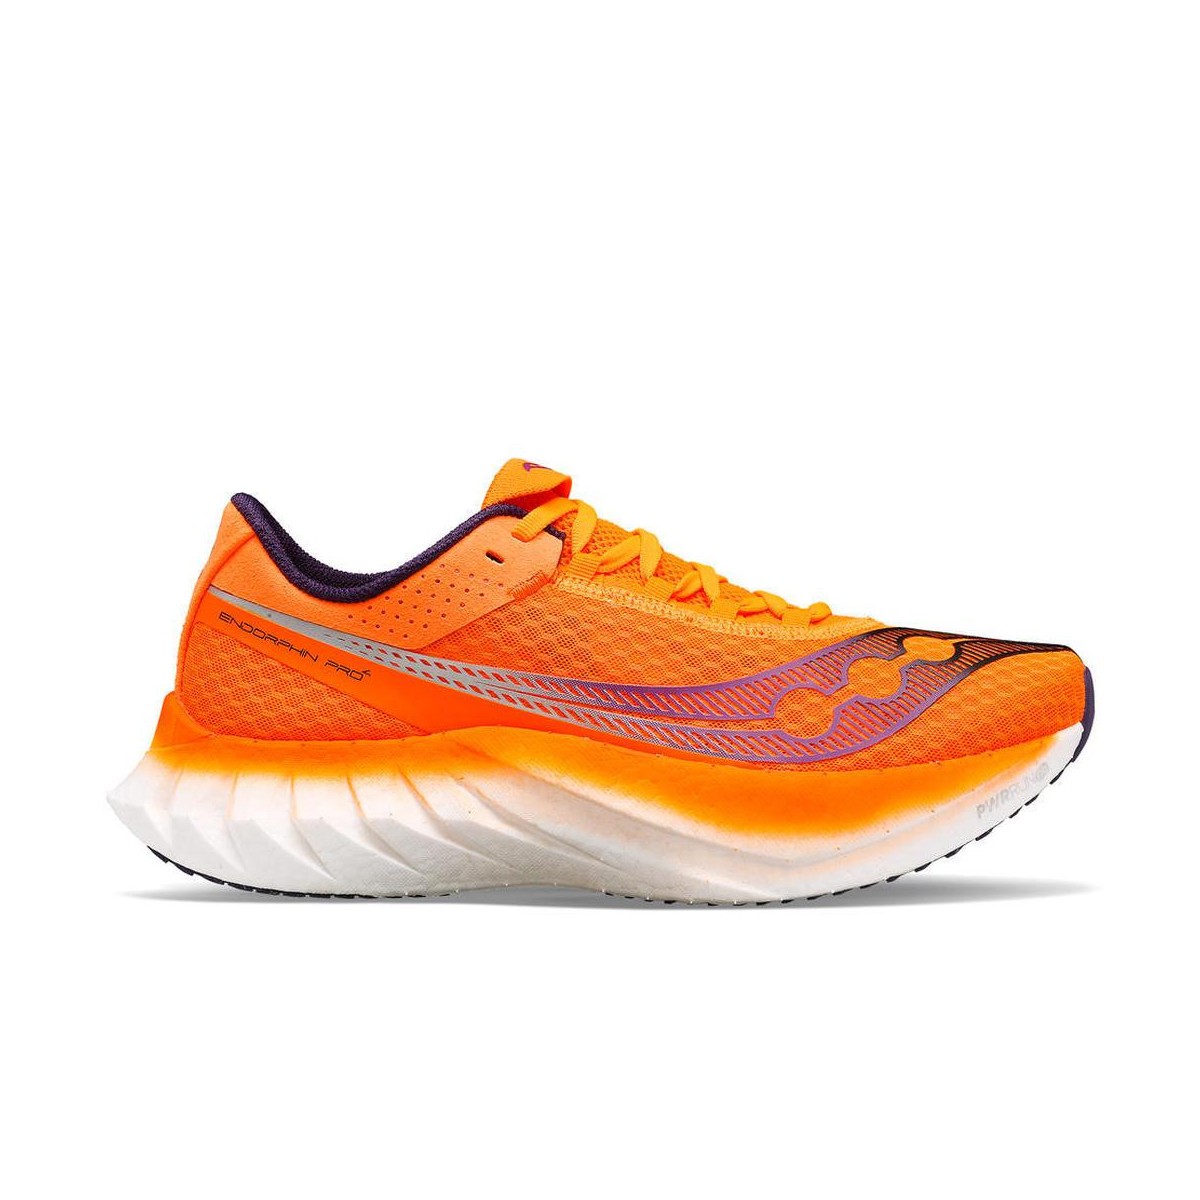 Schuhe Saucony Endorphin Pro 4 Orange Weiß SS24, Größe 44,5 - EUR